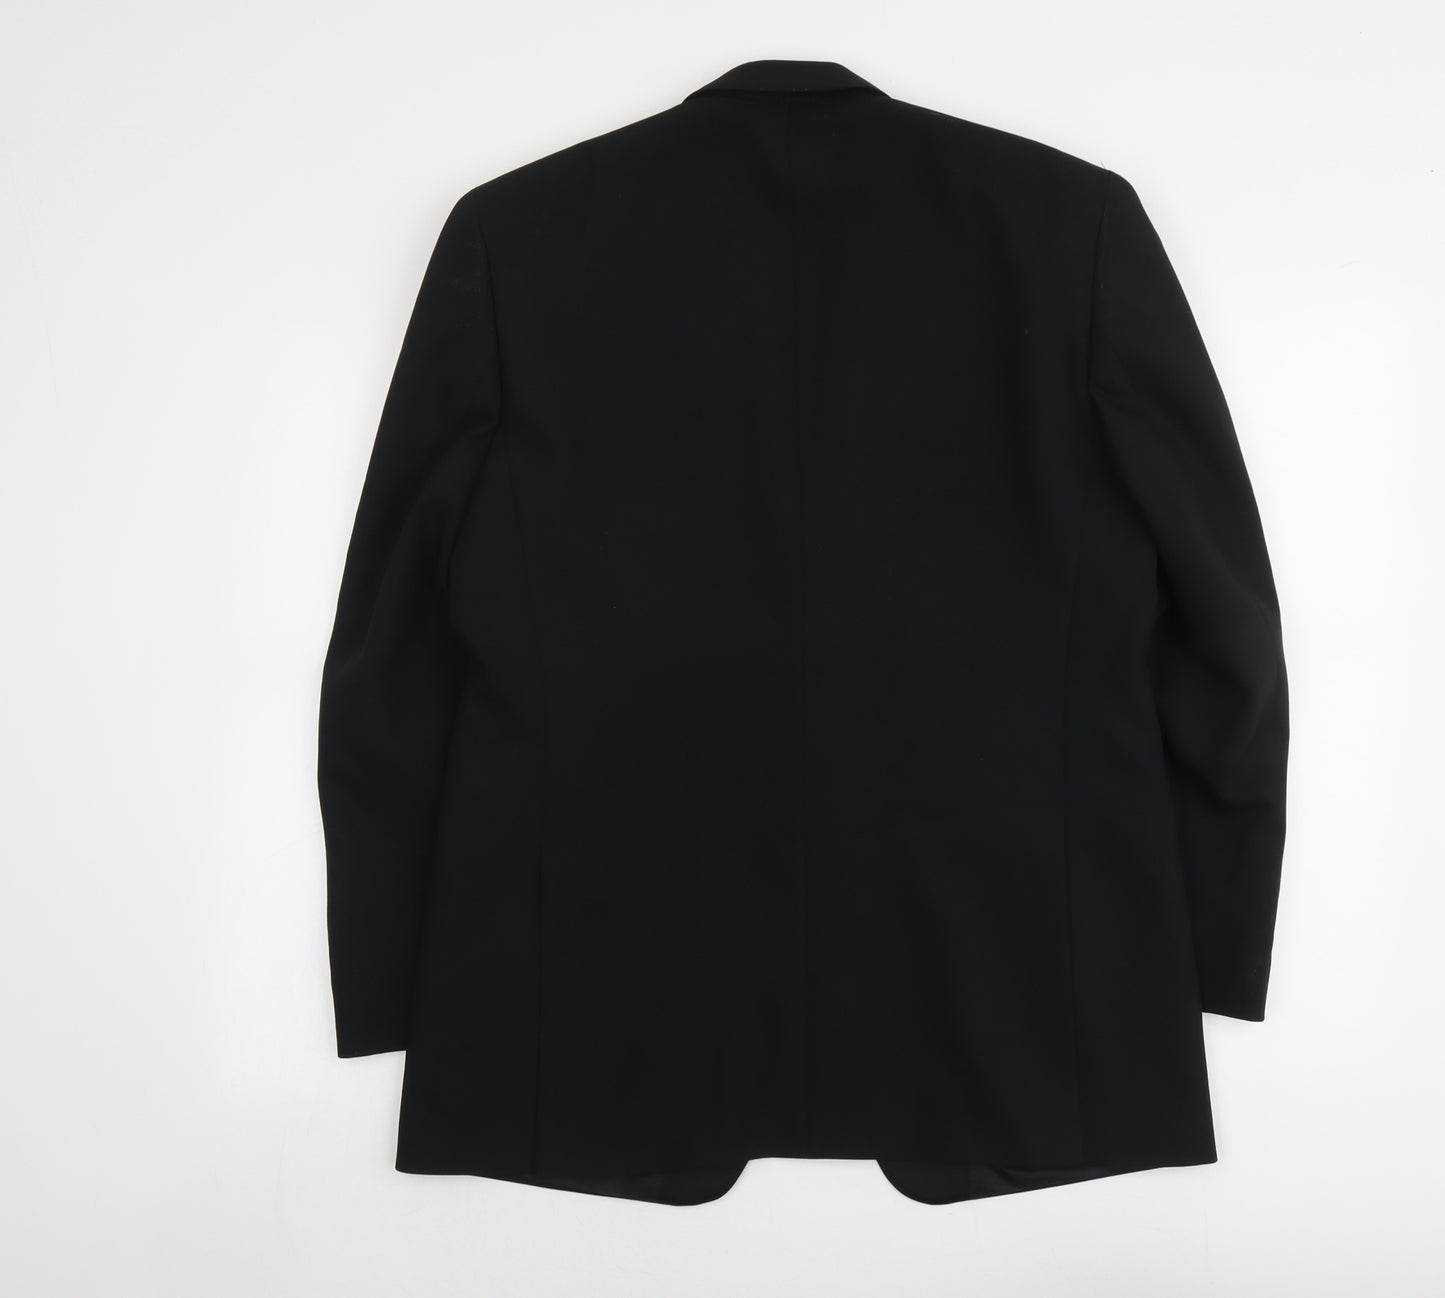 Greenwoods Mens Black Polyester Jacket Suit Jacket Size 38 Regular